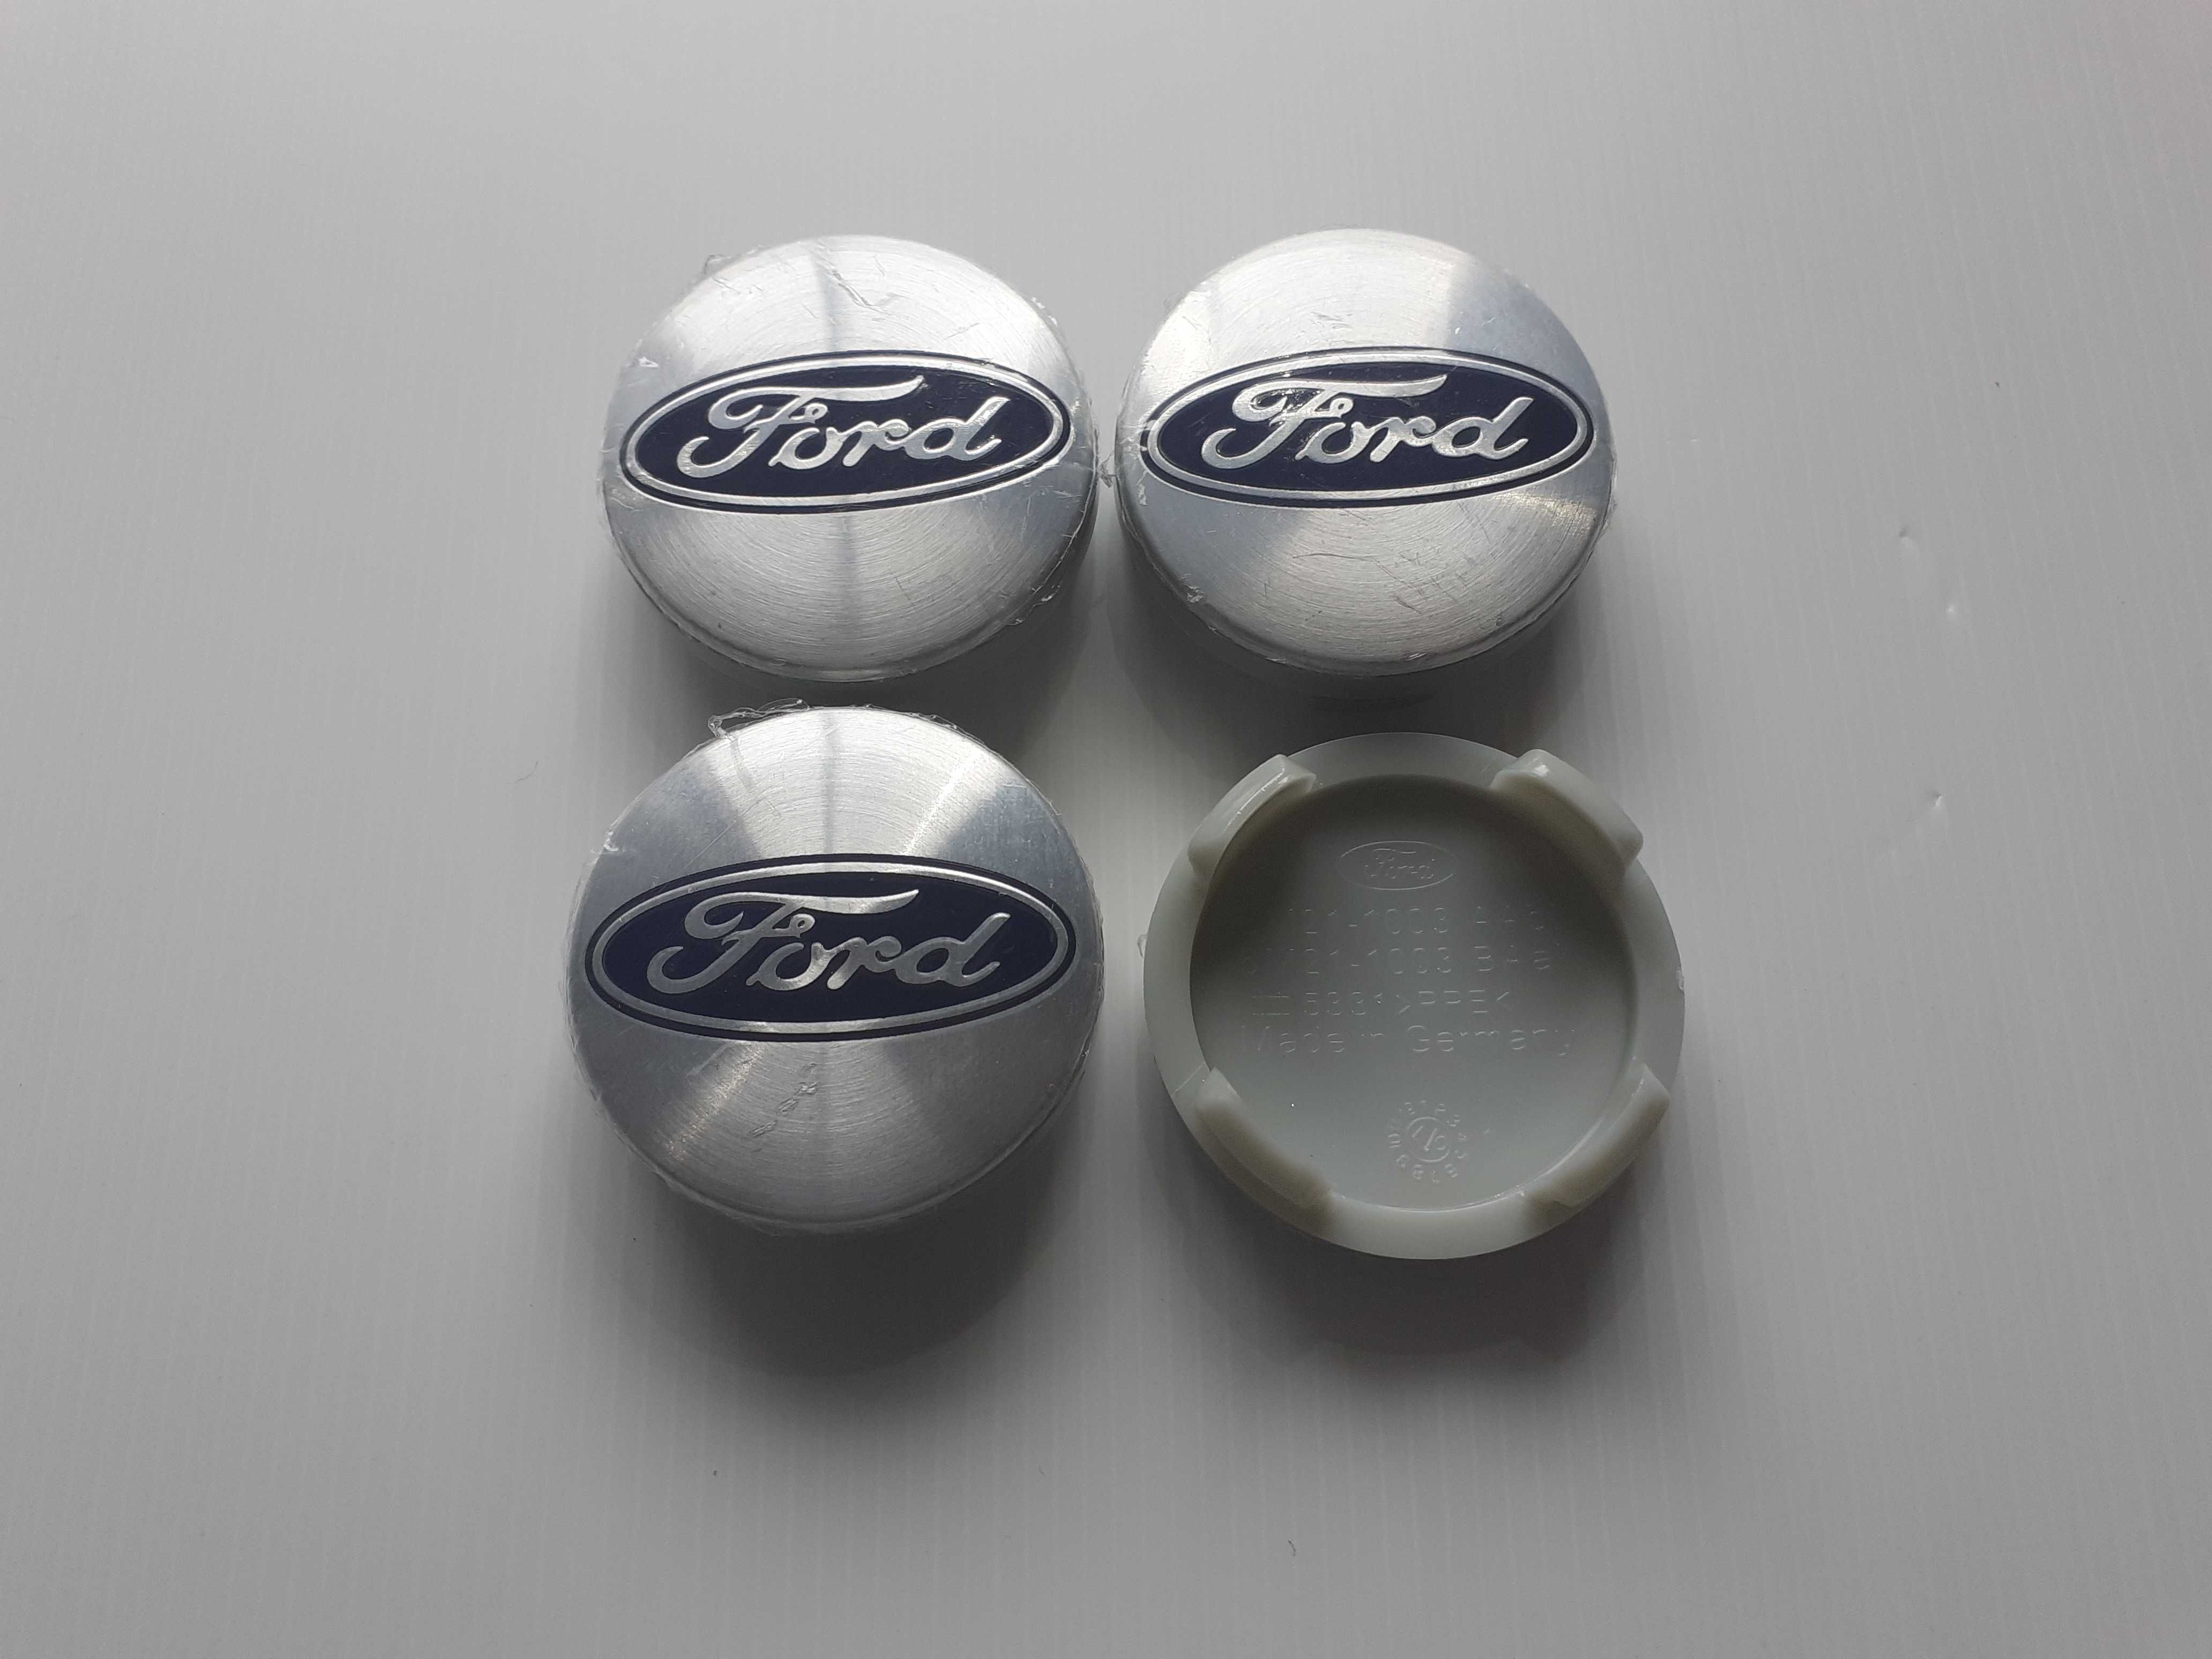 Centros/tampas de jante completos Ford com 54, 56, 60, 65 e 68 mm